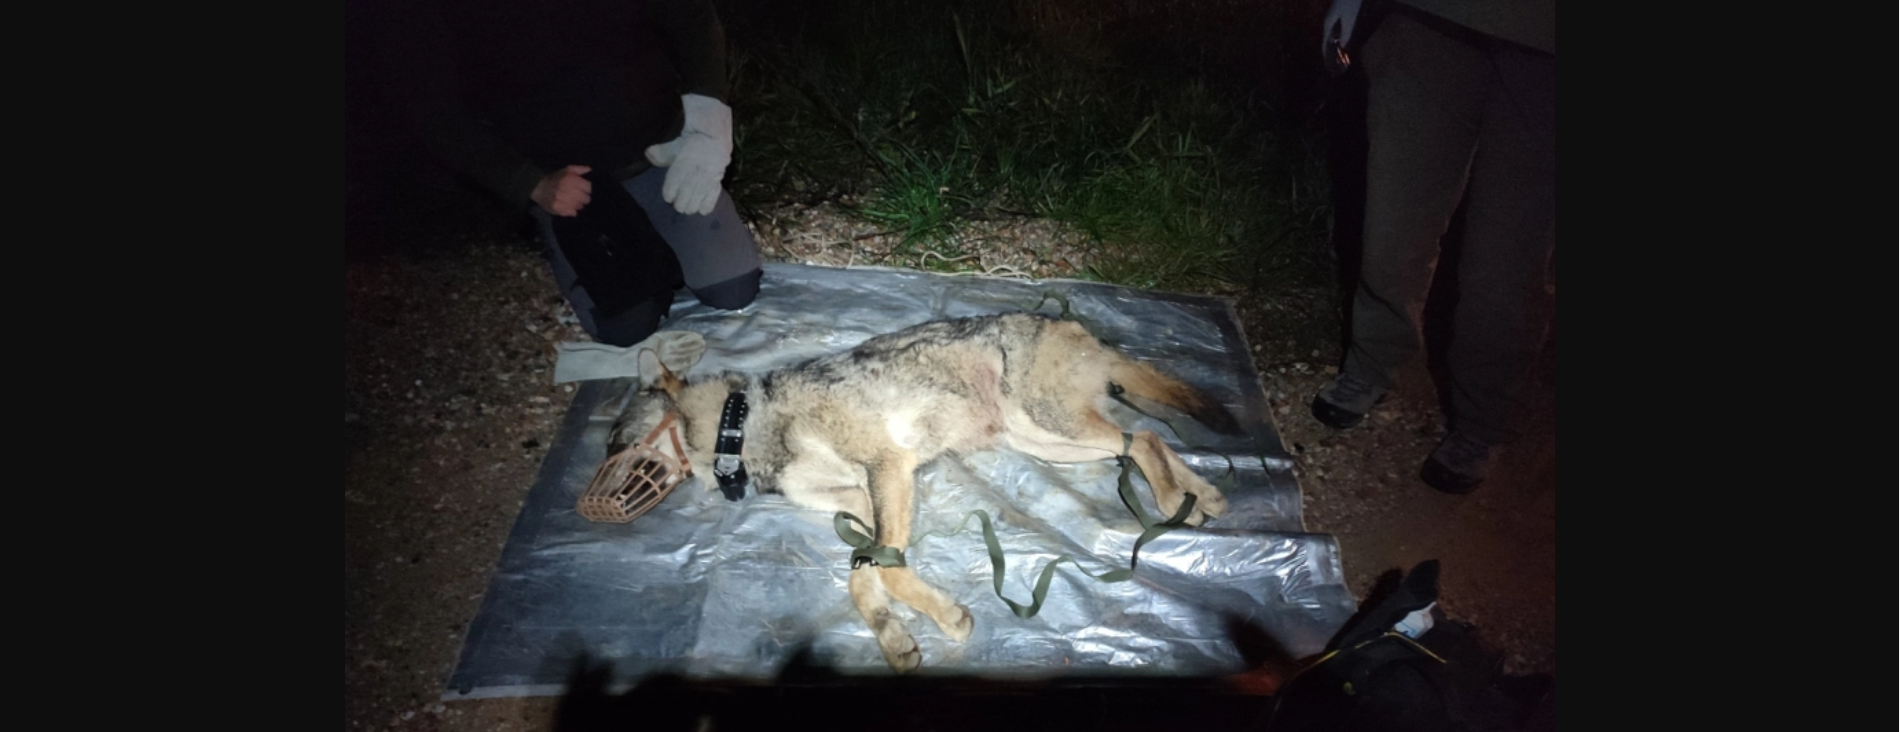 Θεσσαλονίκη: Λύκος εγκλωβίστηκε σε έκταση που ανήκει στην Αστυνομία (φωτο)